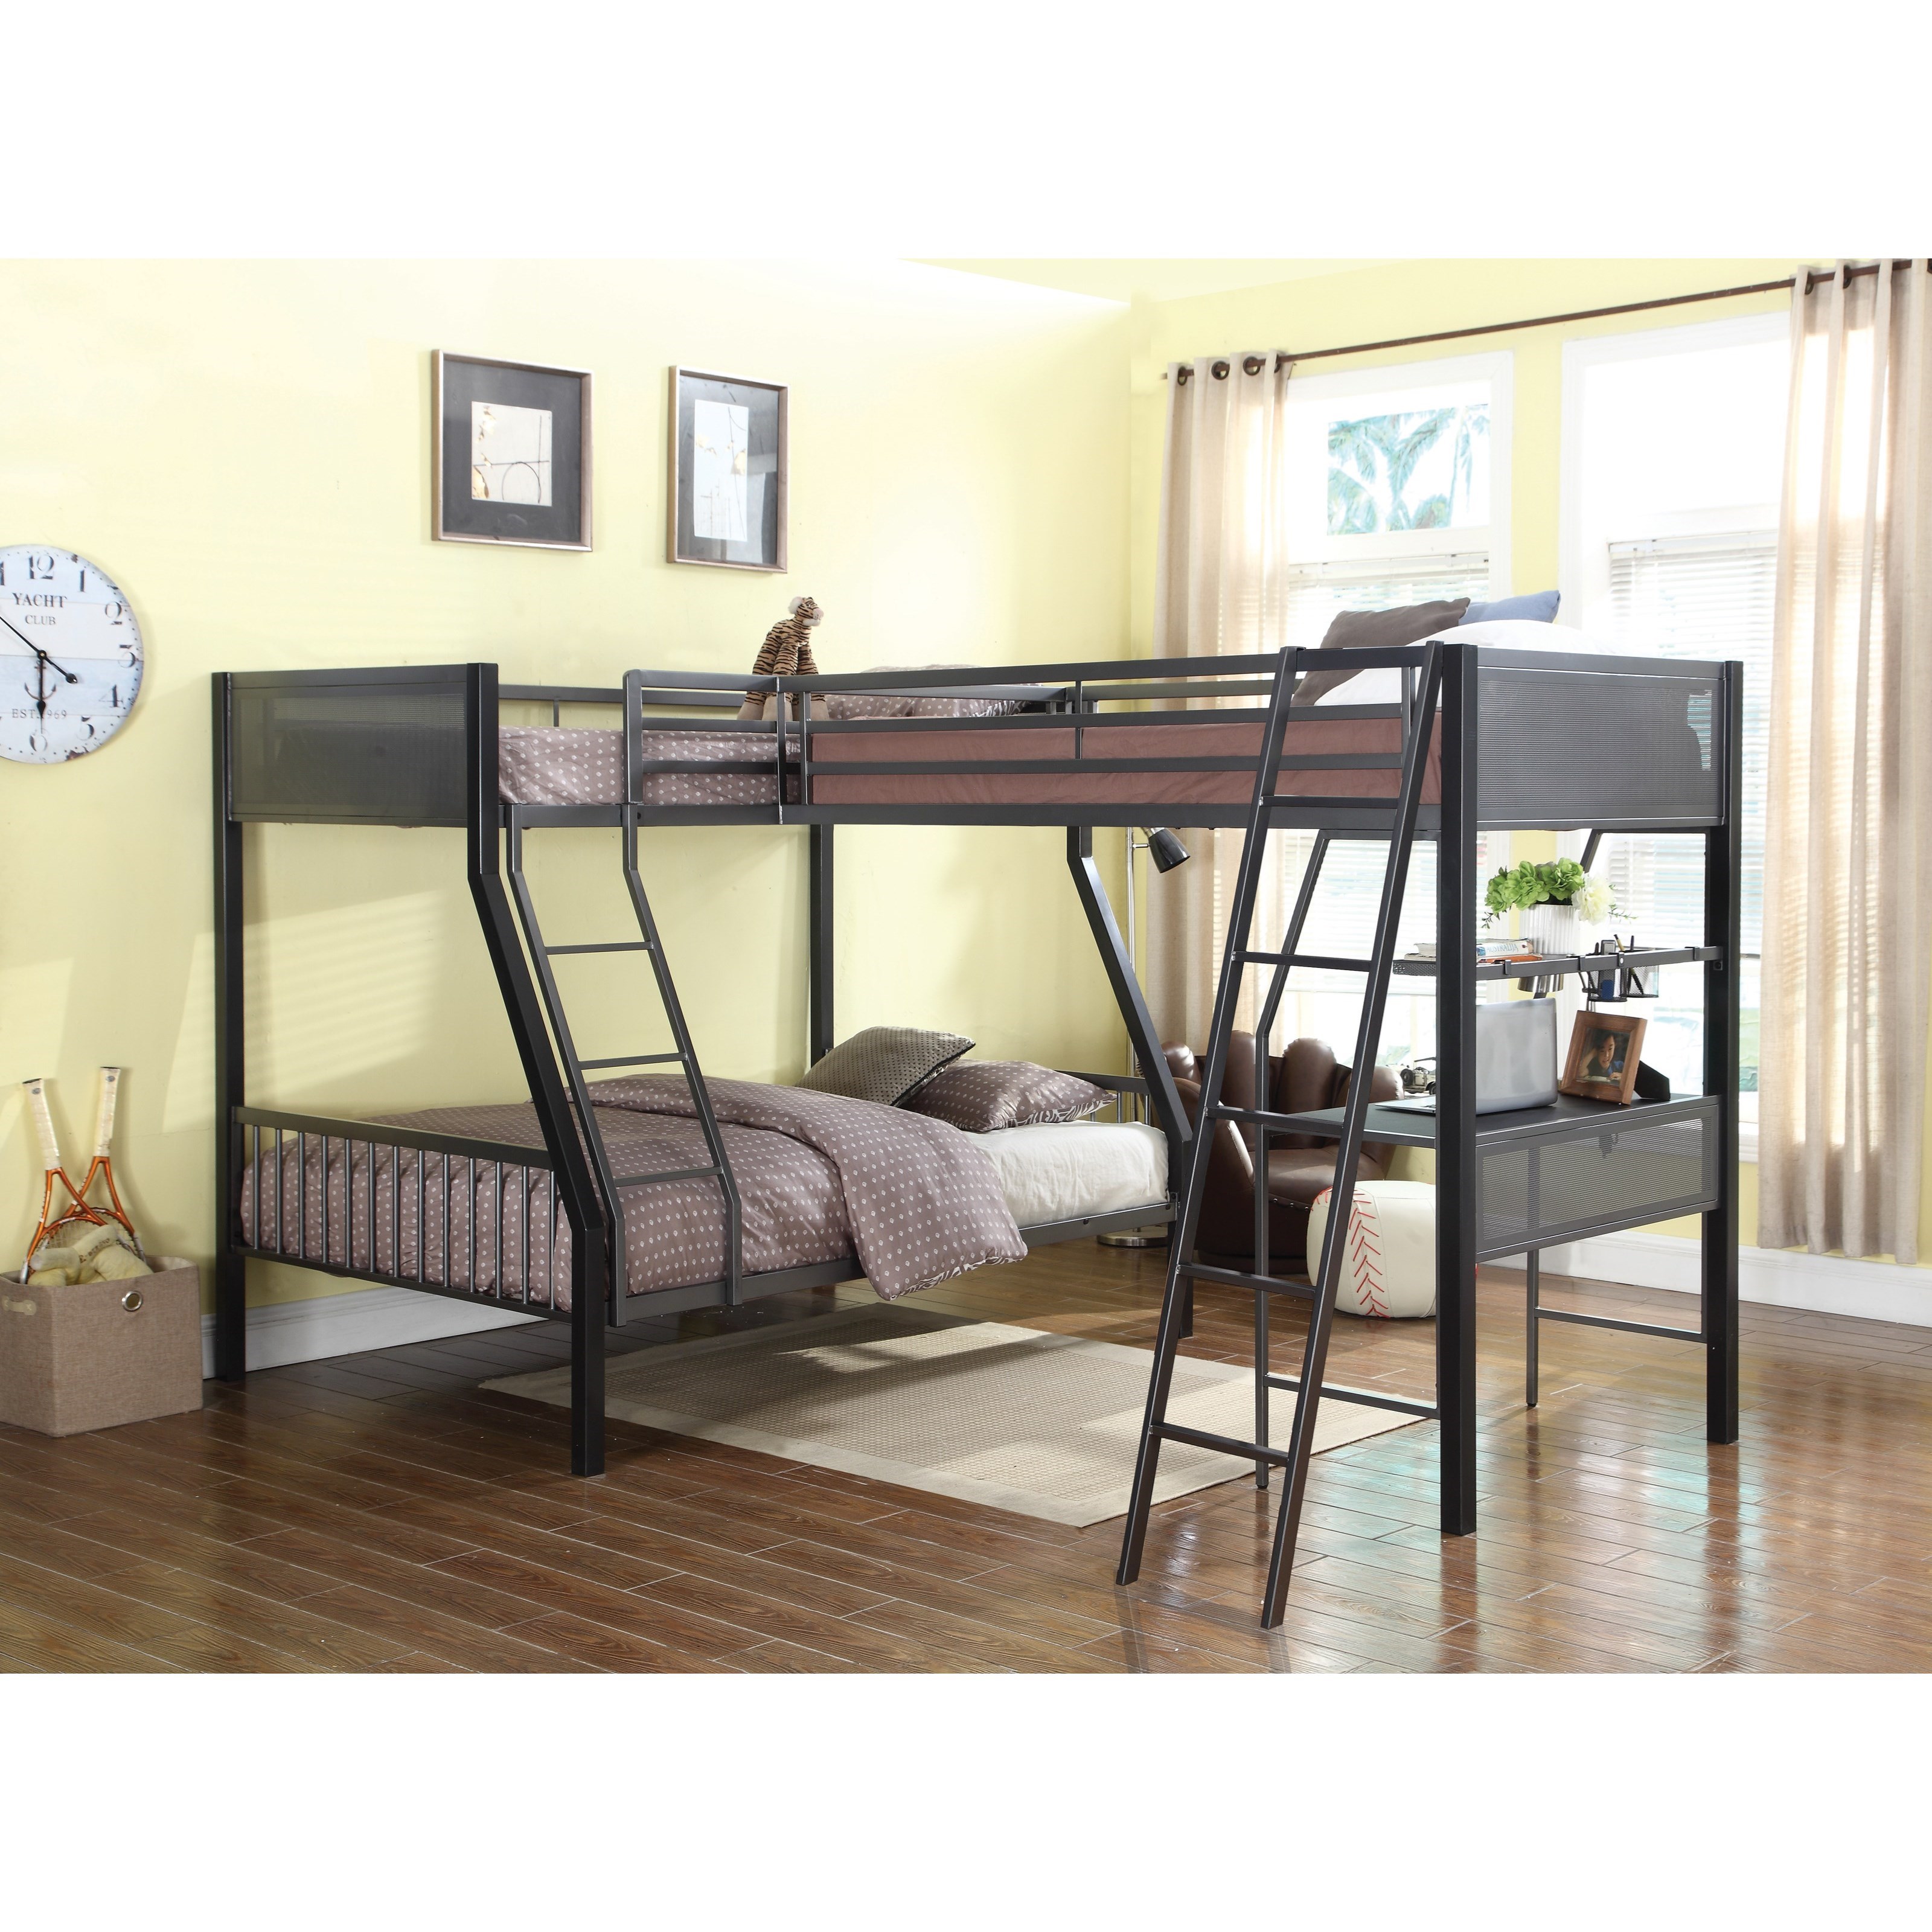 Кровать чердак с двуспальной кроватью внизу для родителей